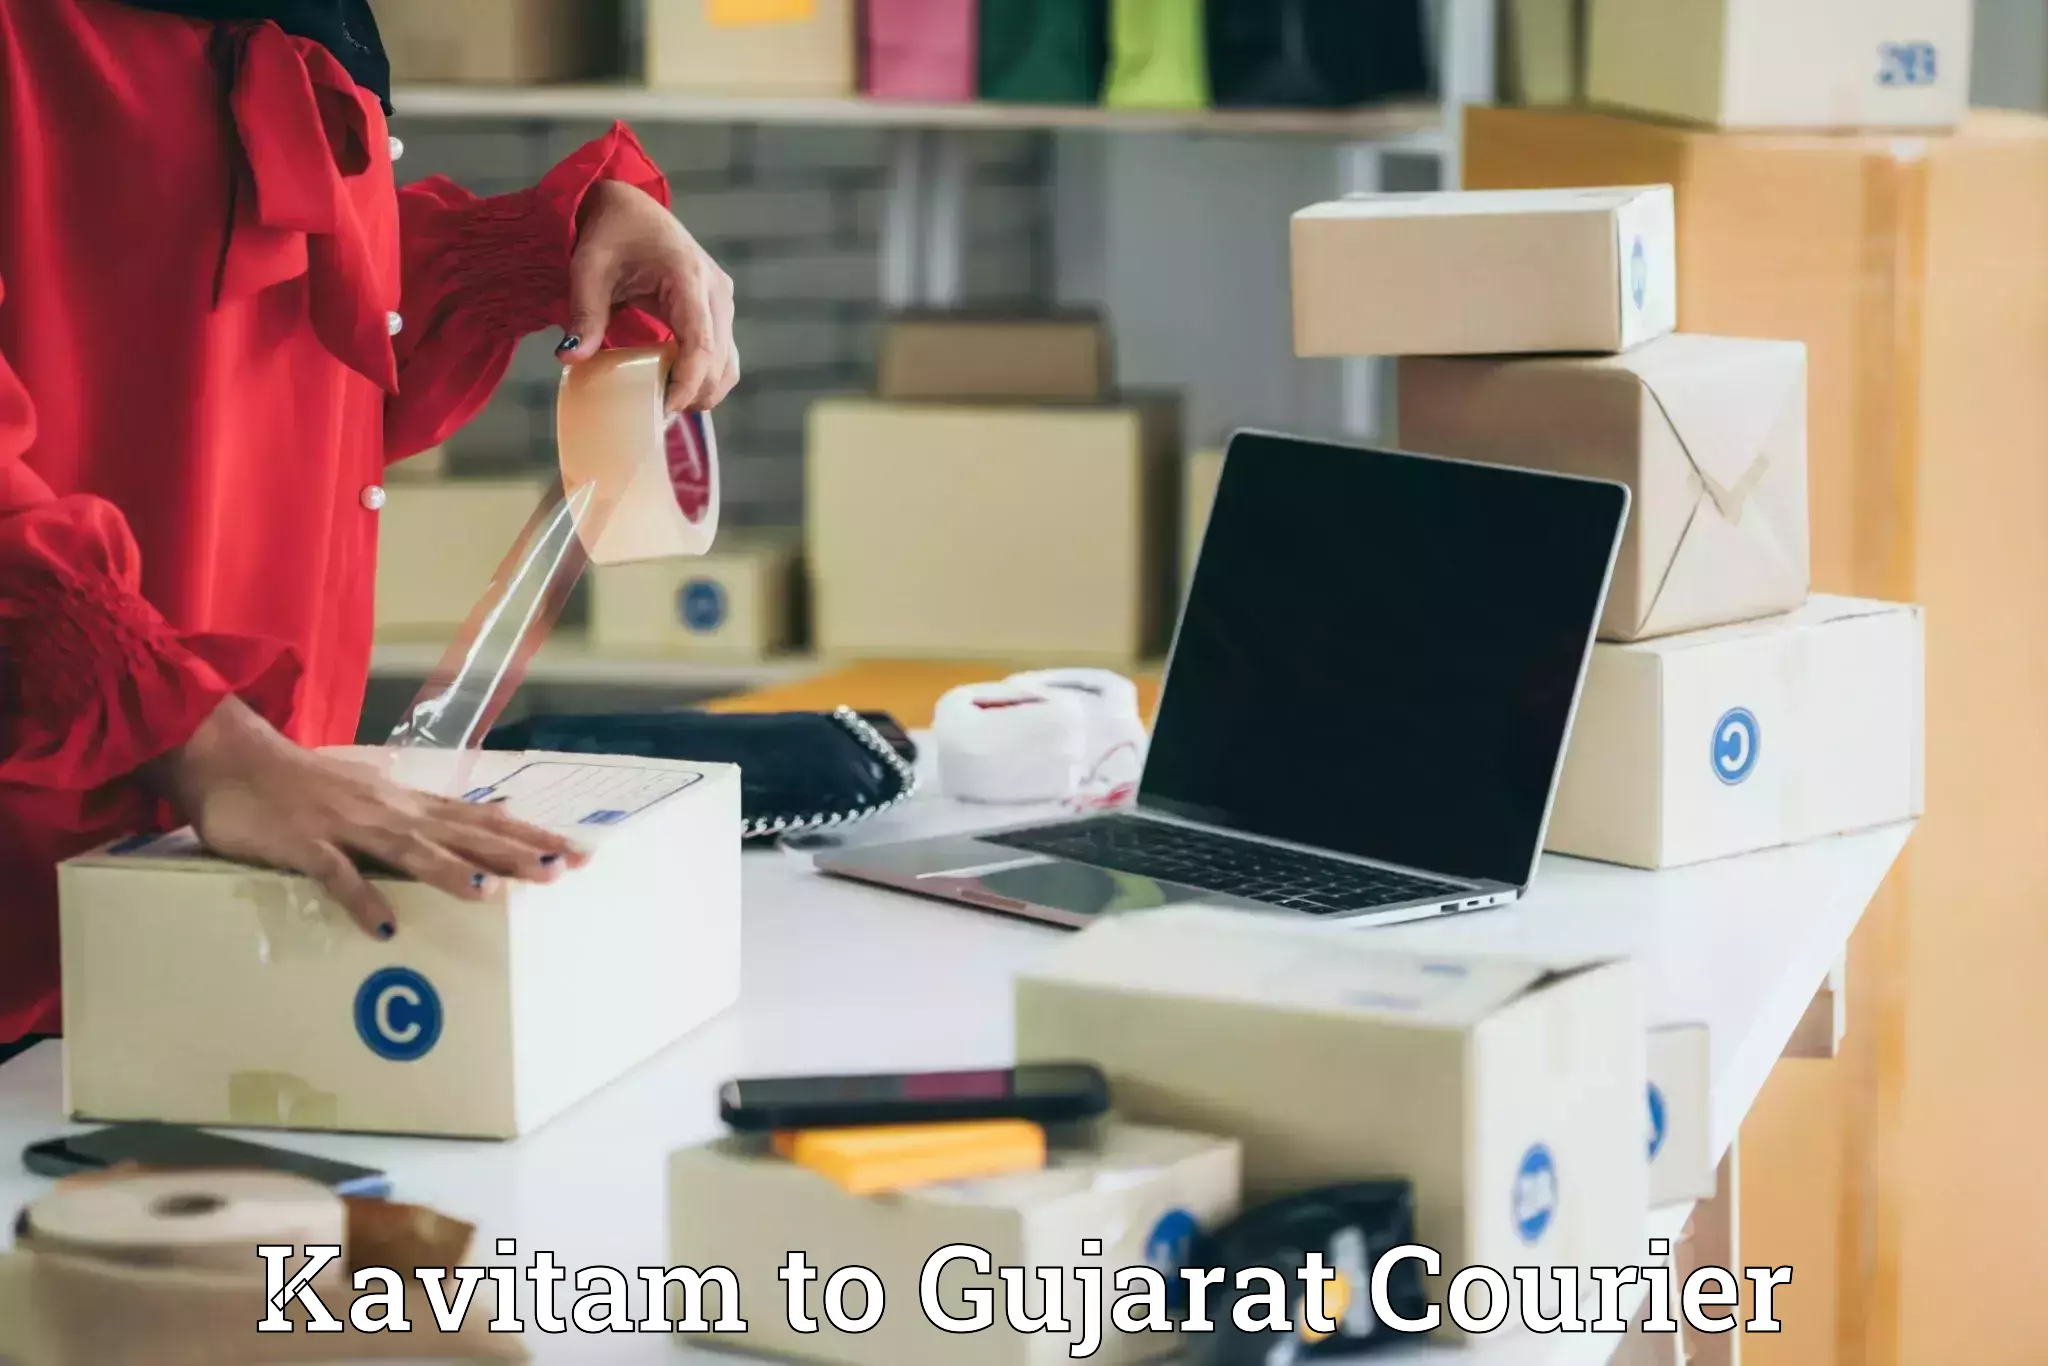 Online shipping calculator Kavitam to IIIT Vadodara